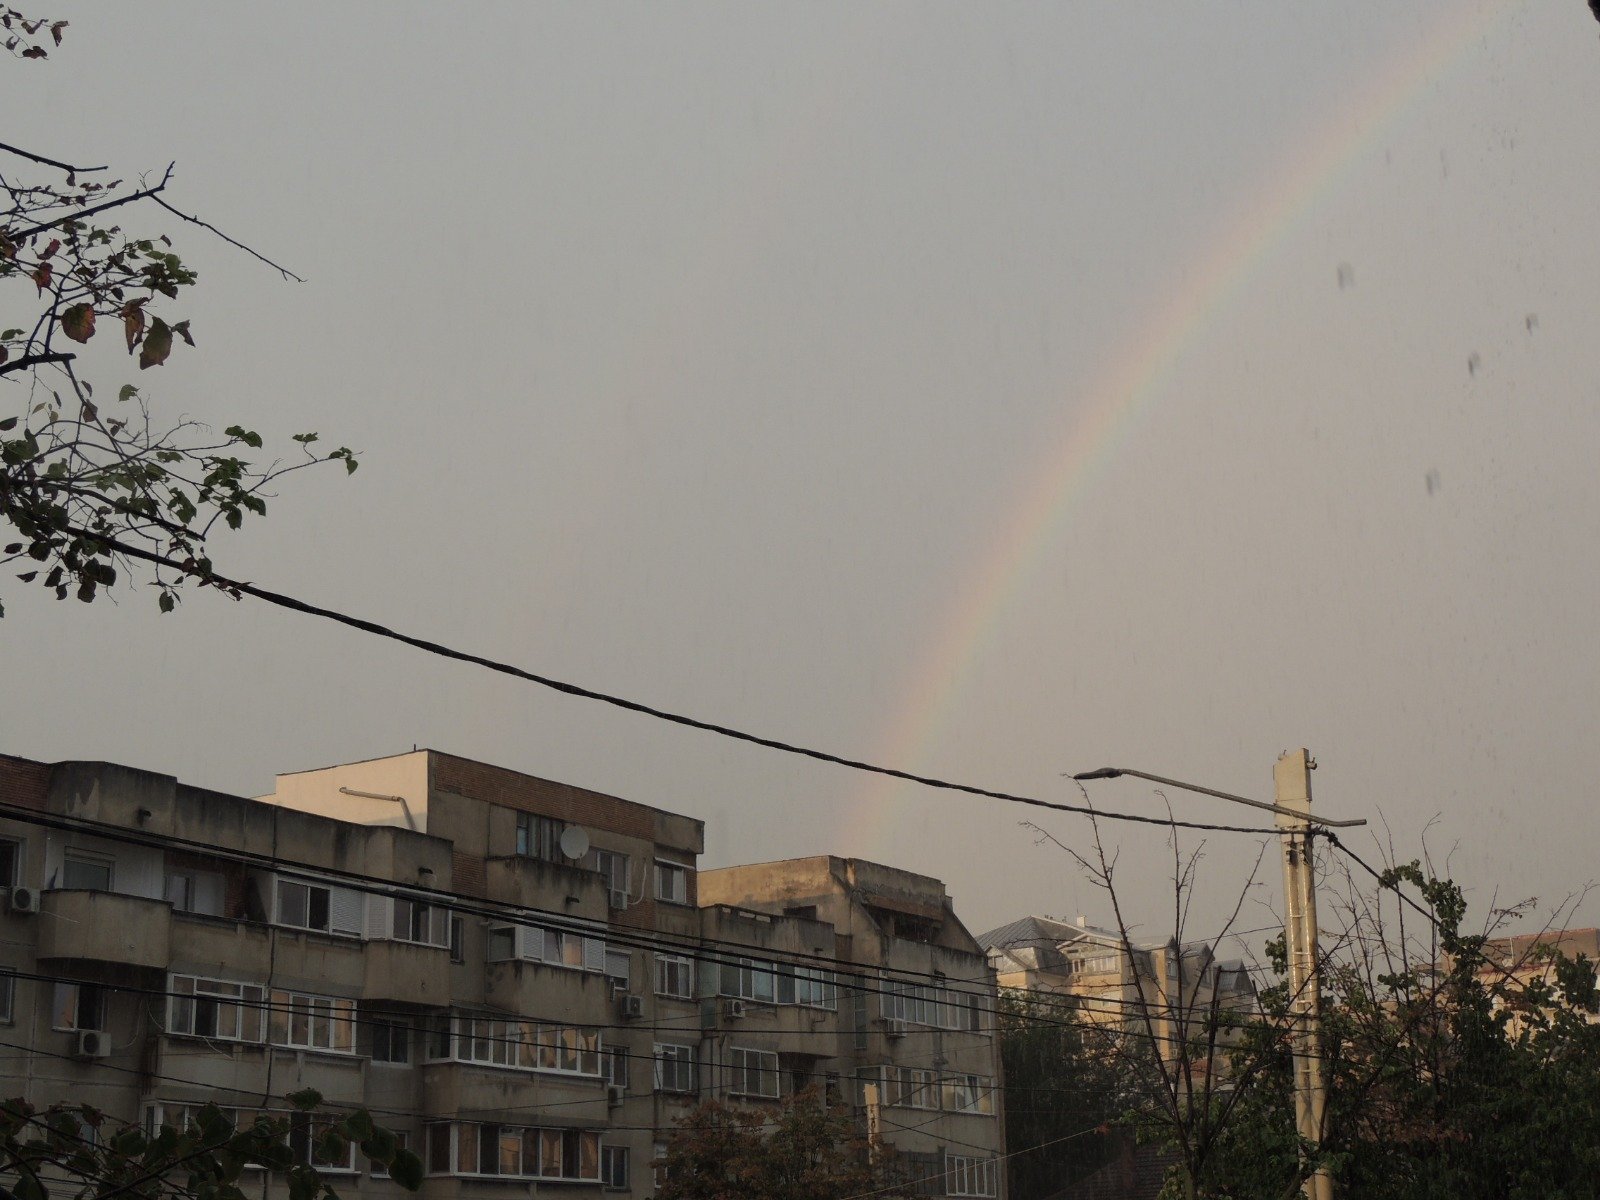  FOTO: A ieșit curcubeul în Iași după o scurtă furtună cu soare